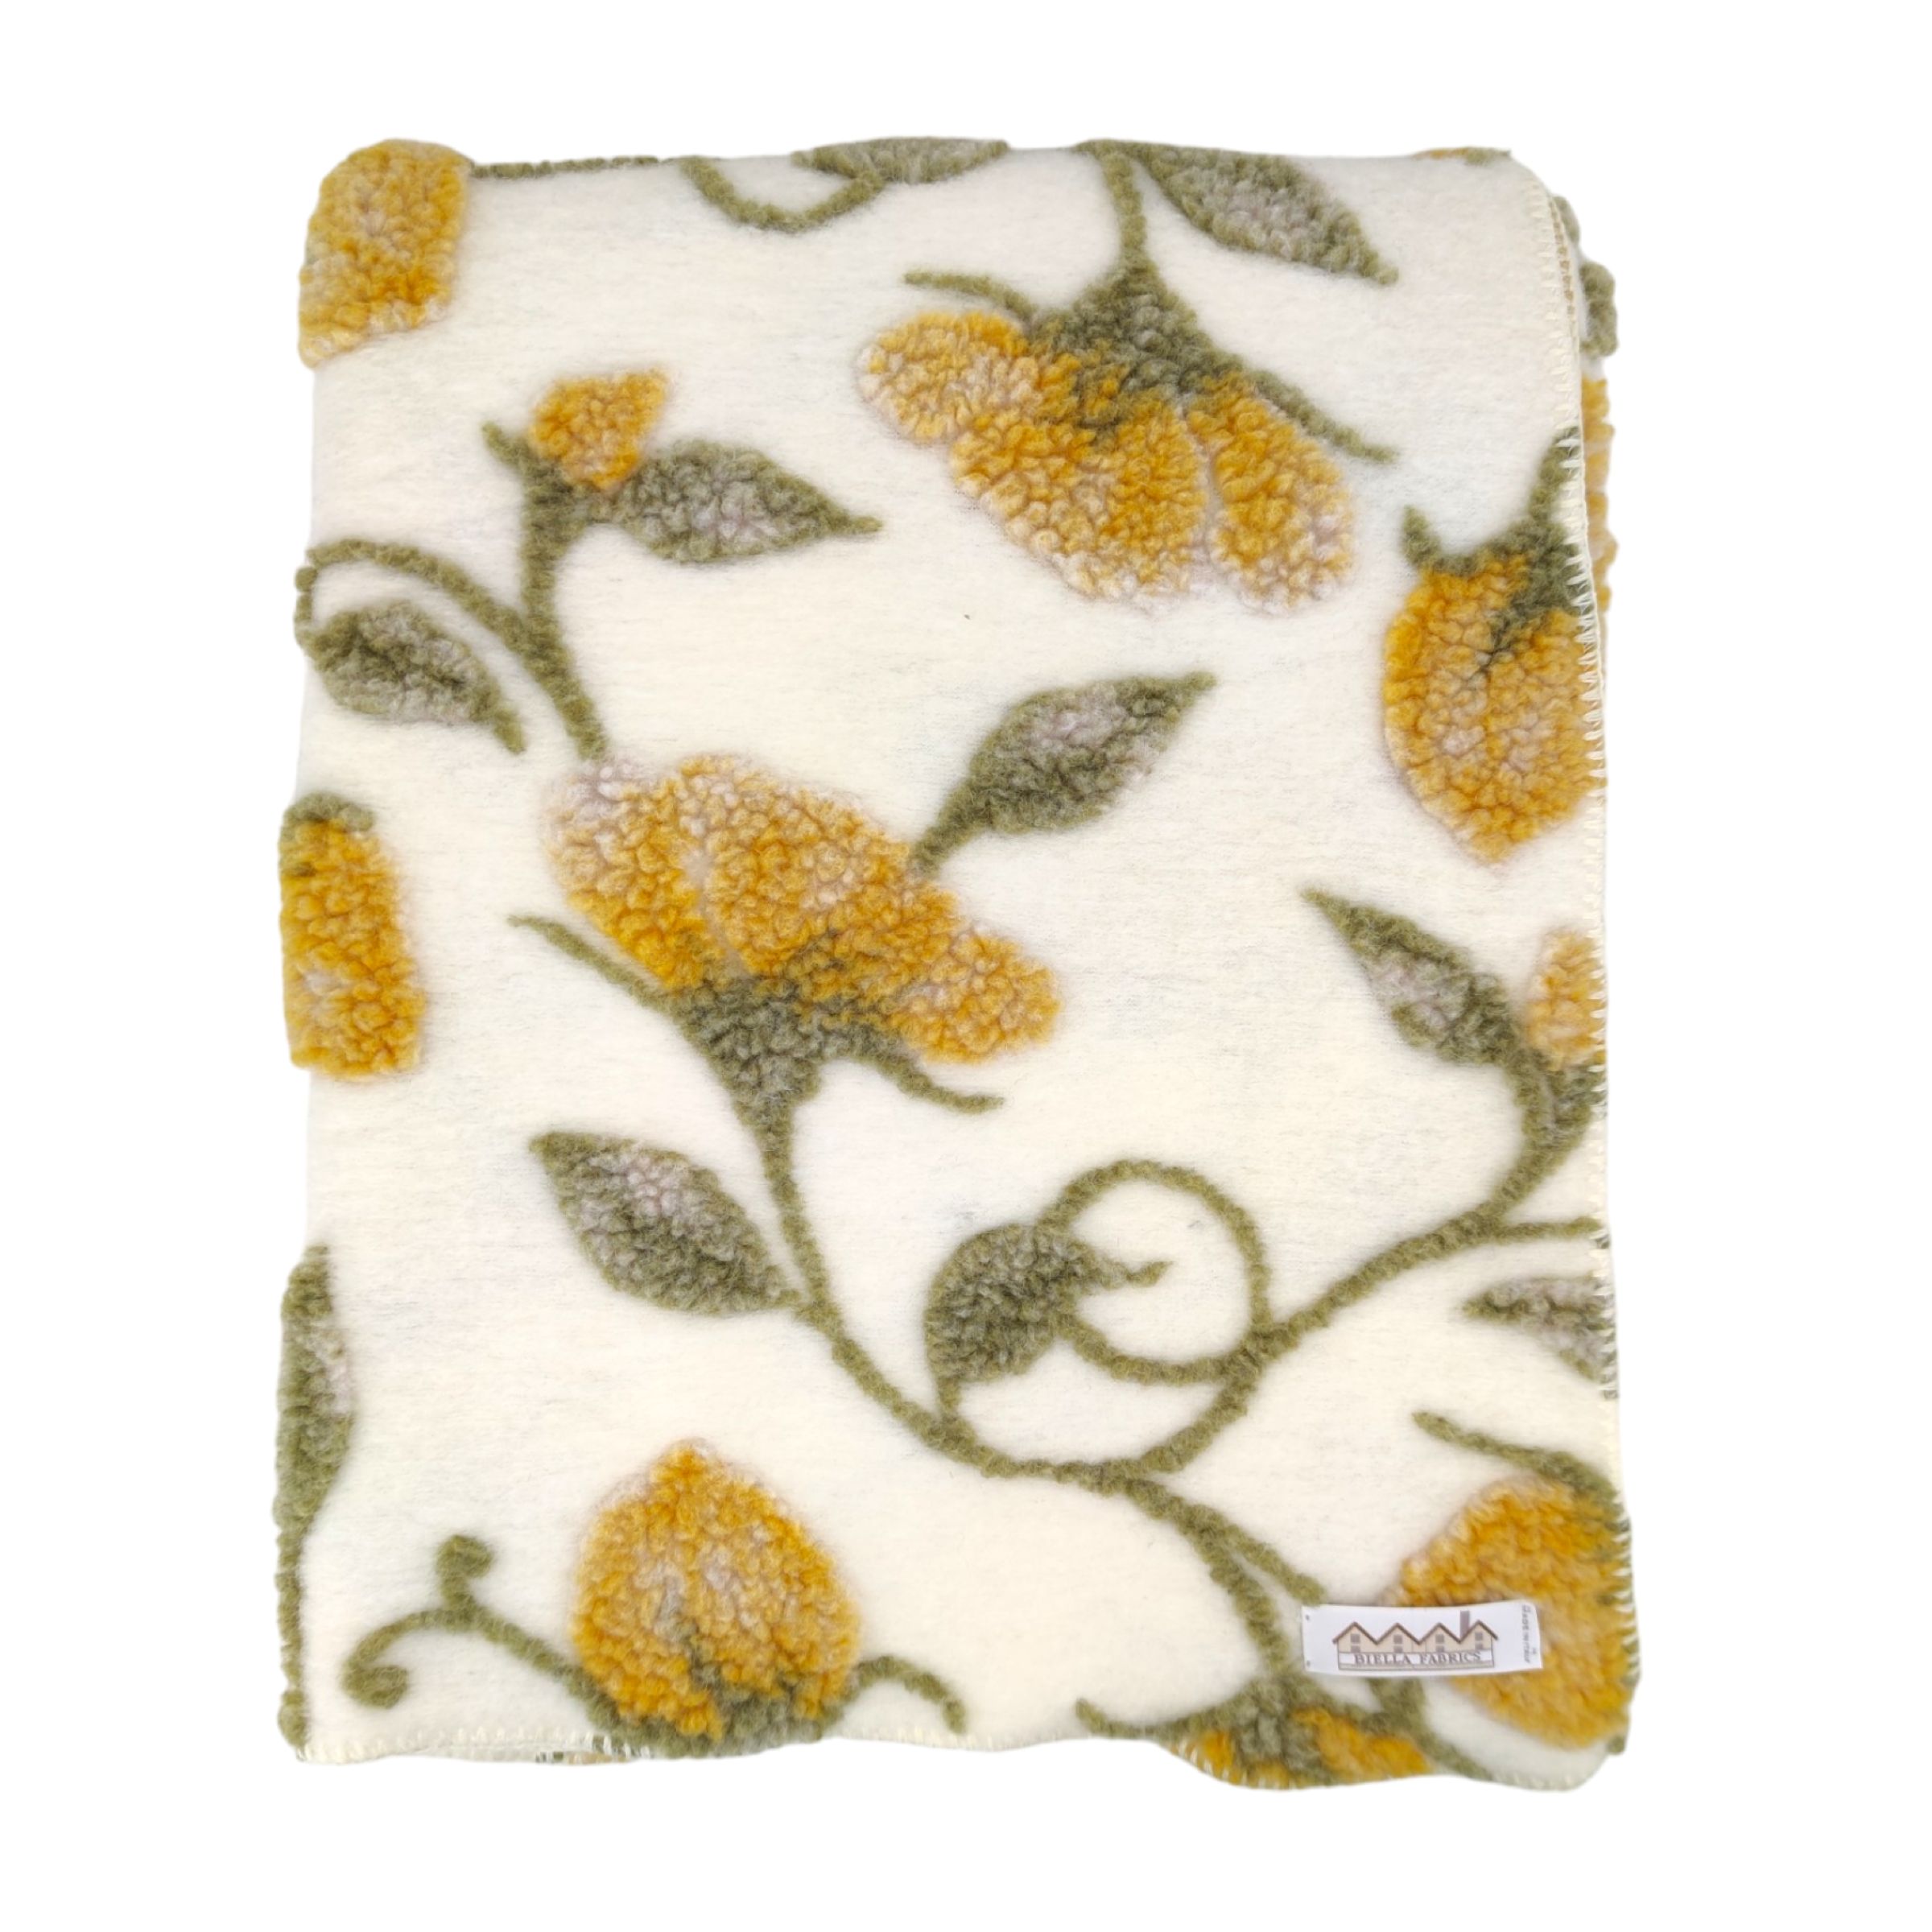 Biella Fabrics Coperta Narciso Cream/Mustard/White